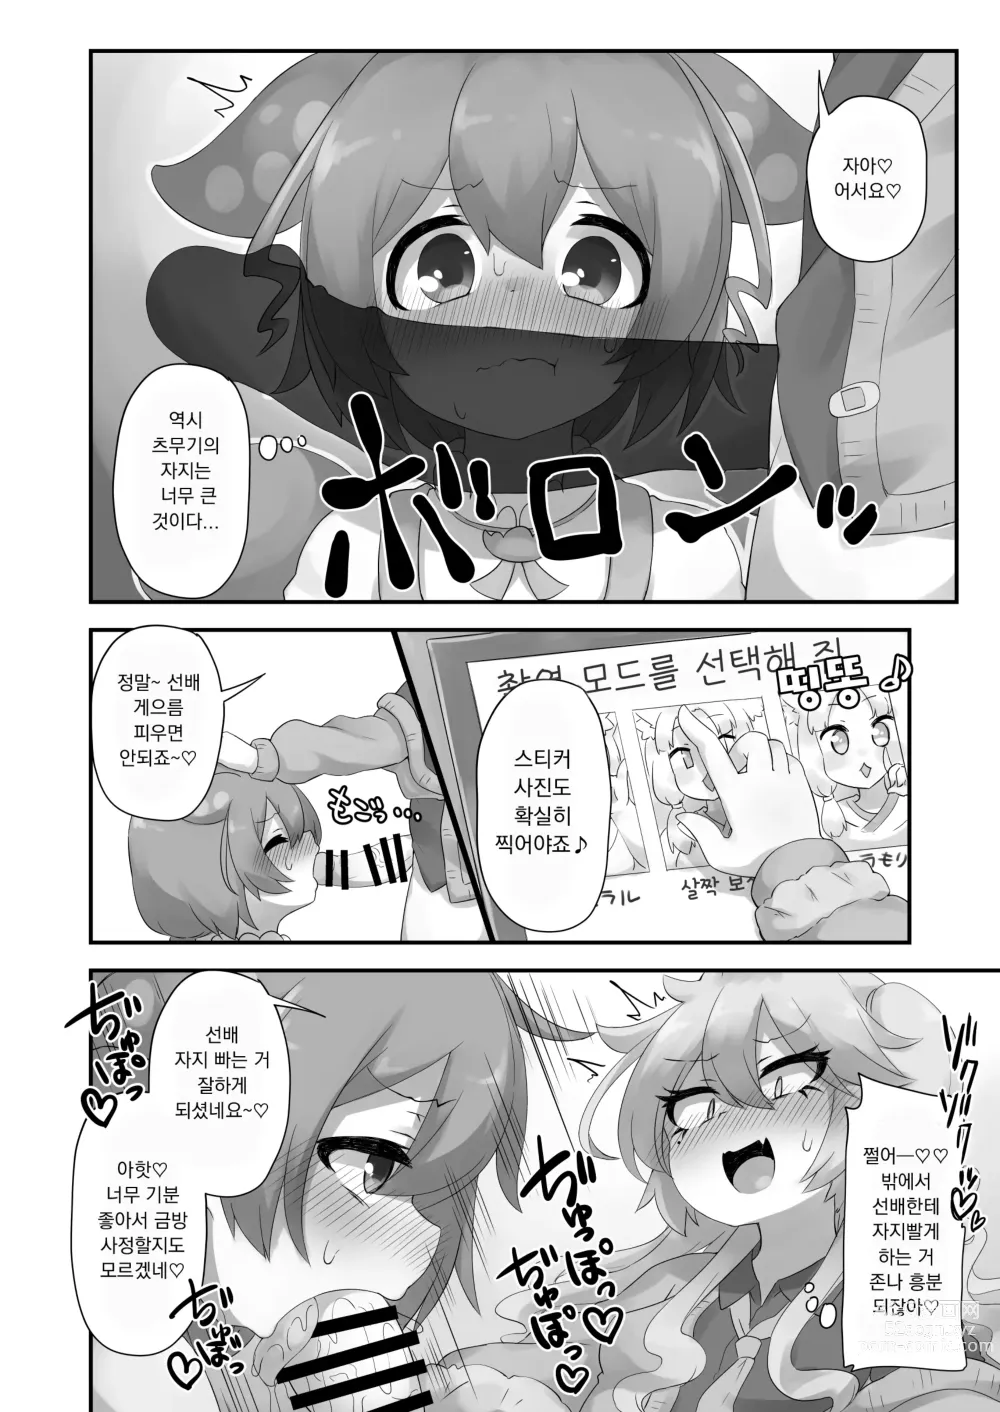 Page 22 of doujinshi 뭔가 생겨난 것이다!?